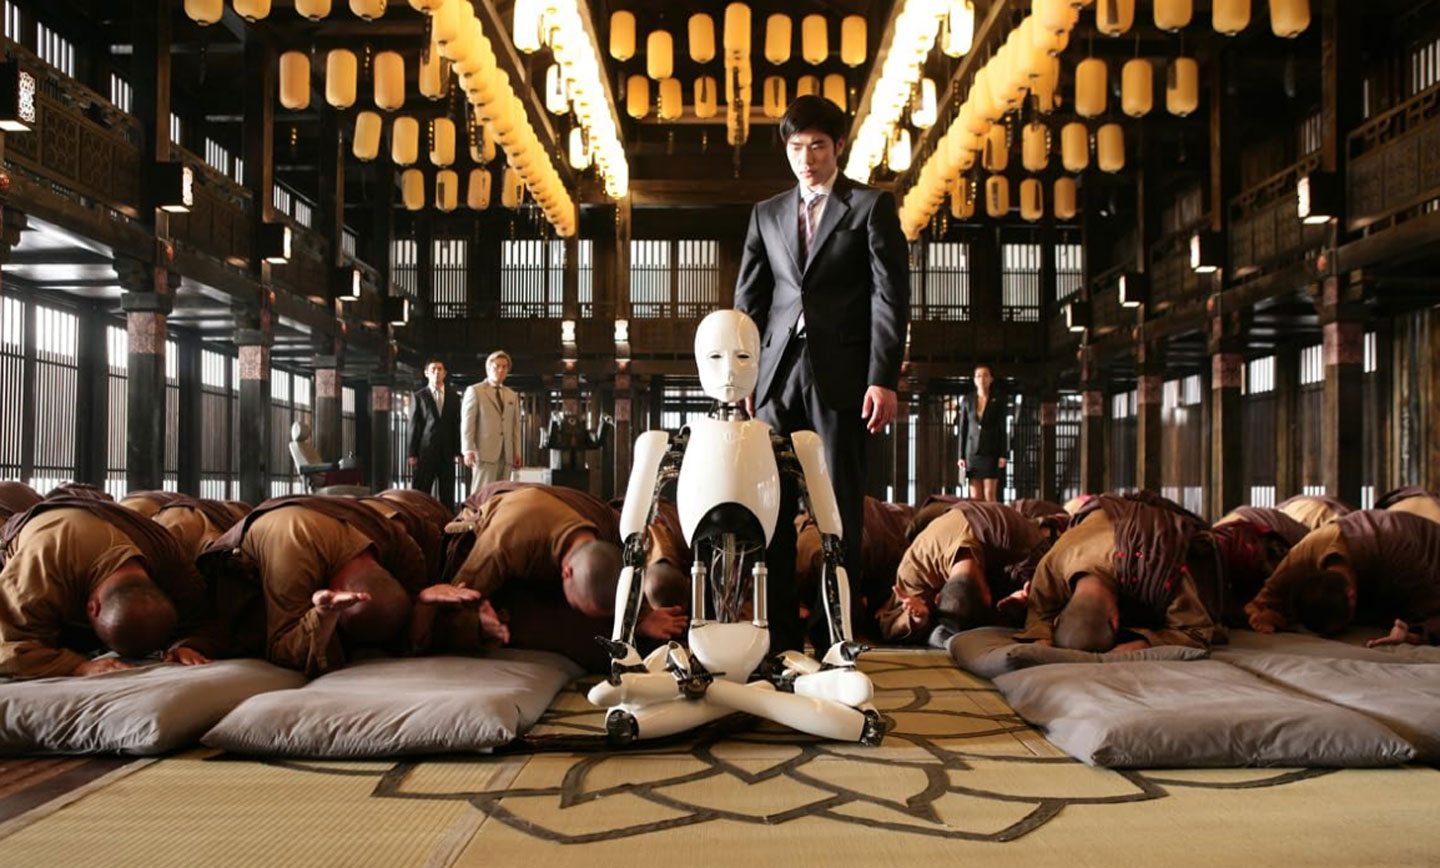 «کتاب رستاخیز» یک فیلم آنتولوژی ترسناک سه قسمتی به کارگردانی یم پیل سونگ، کیم جی وون است که در سال 2012 منتشر شد.